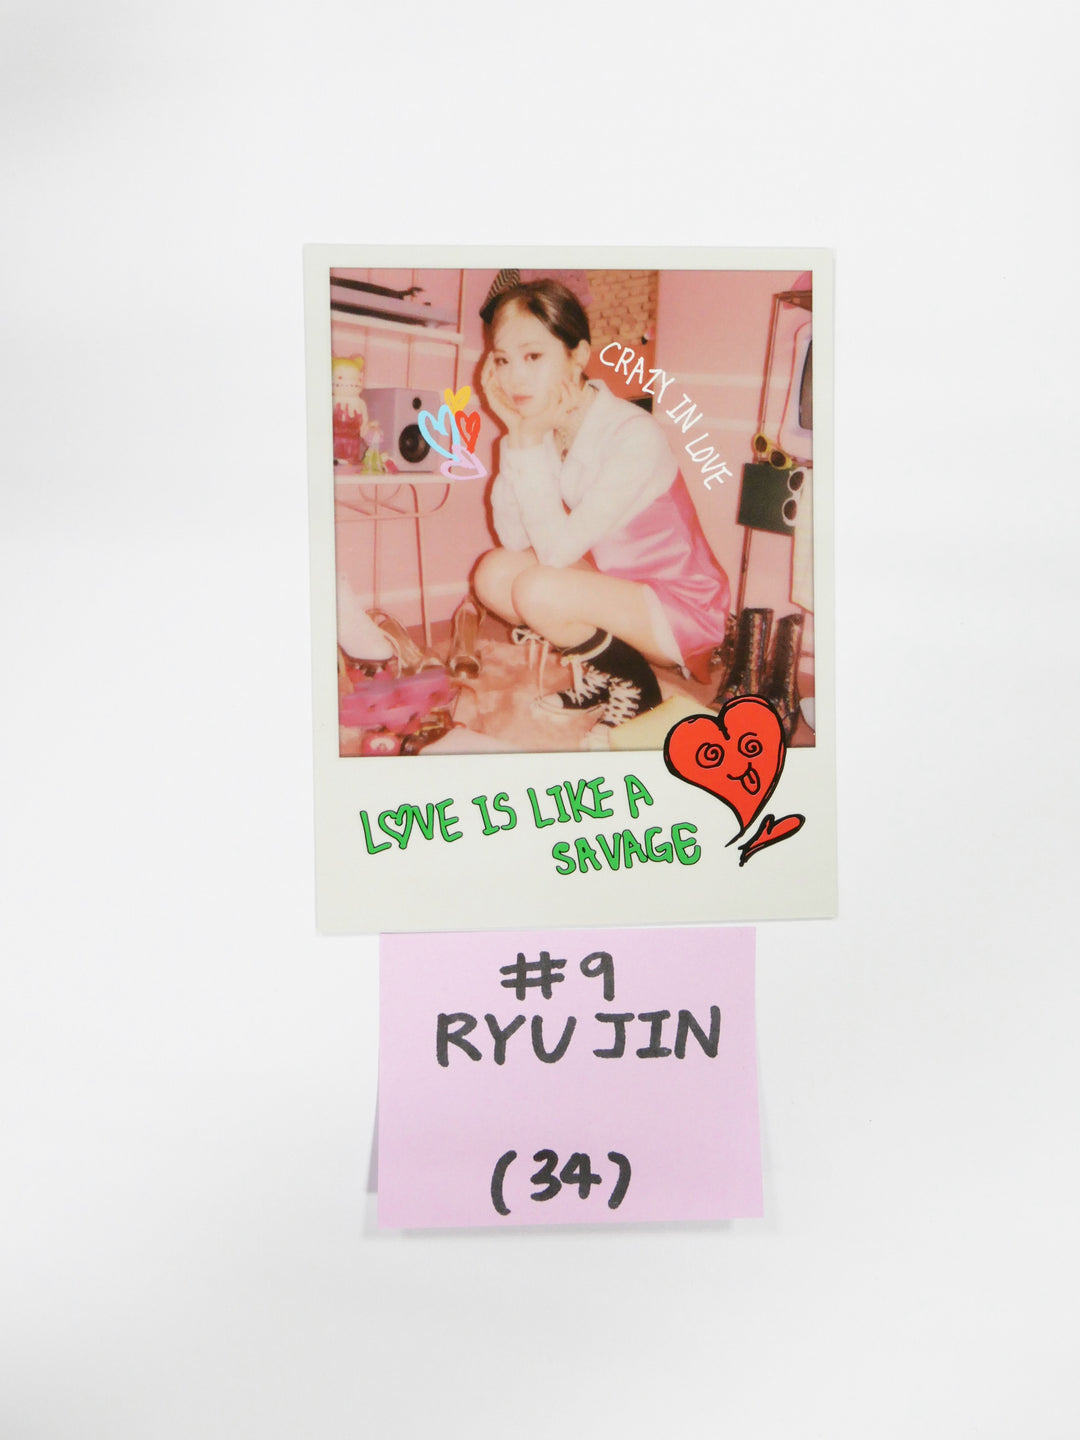 ITZY「CRAZY IN LOVE」 - スタンディングカード、ポラロイドフォトカード [11/19更新]